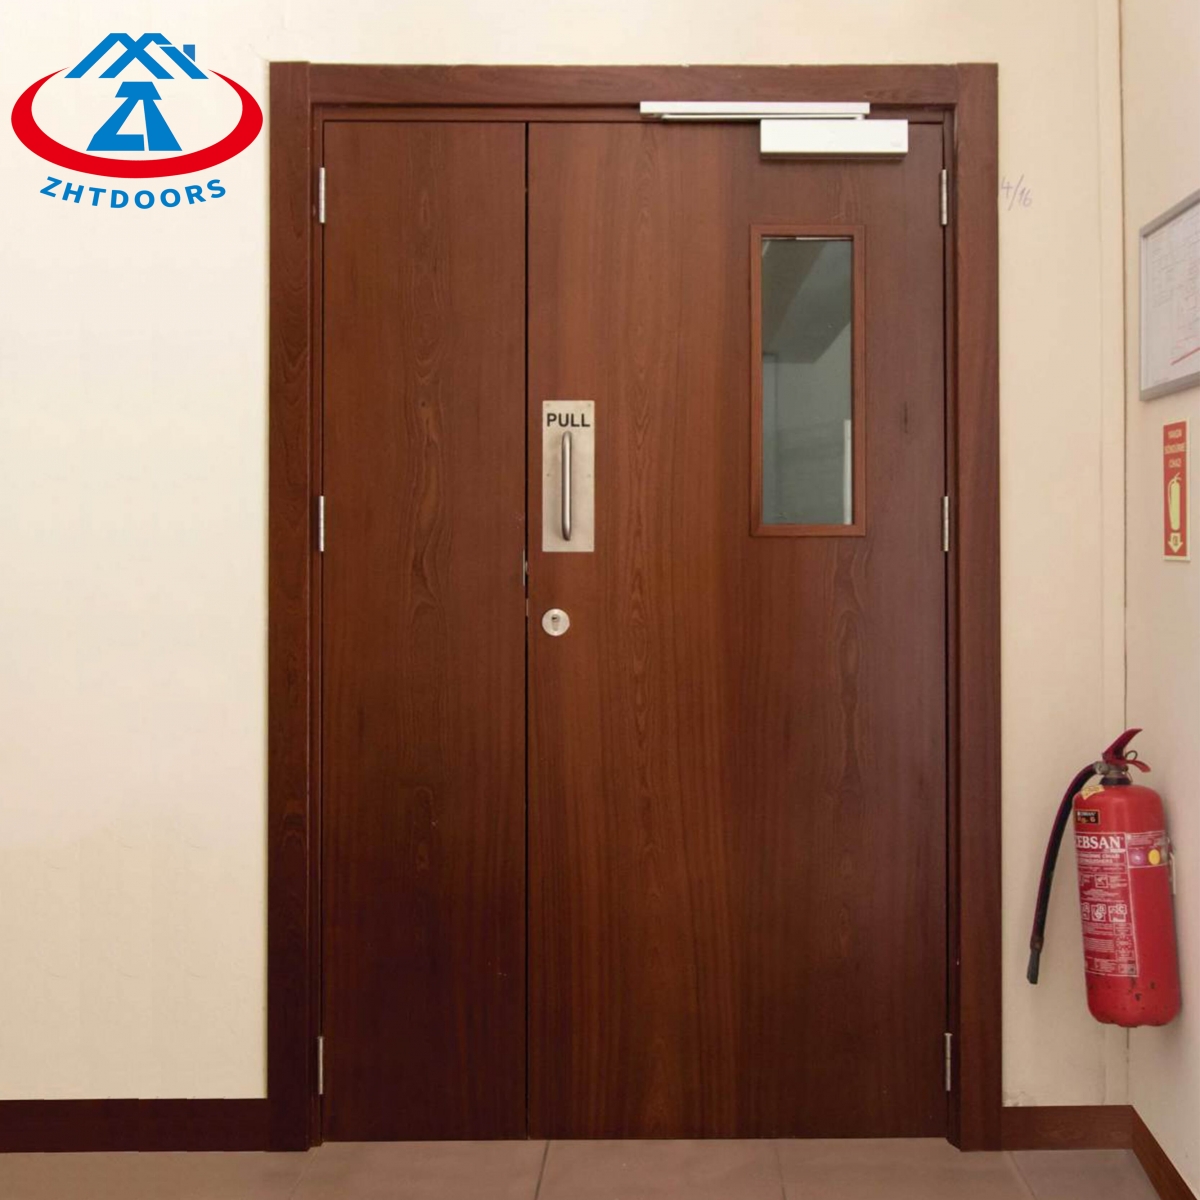 UL Listed Wooden Fire Door-ZTFIRE Door- Fire Door,Fireproof Door,Fire rated Door,Fire Resistant Door,Steel Door,Metal Door,Exit Door